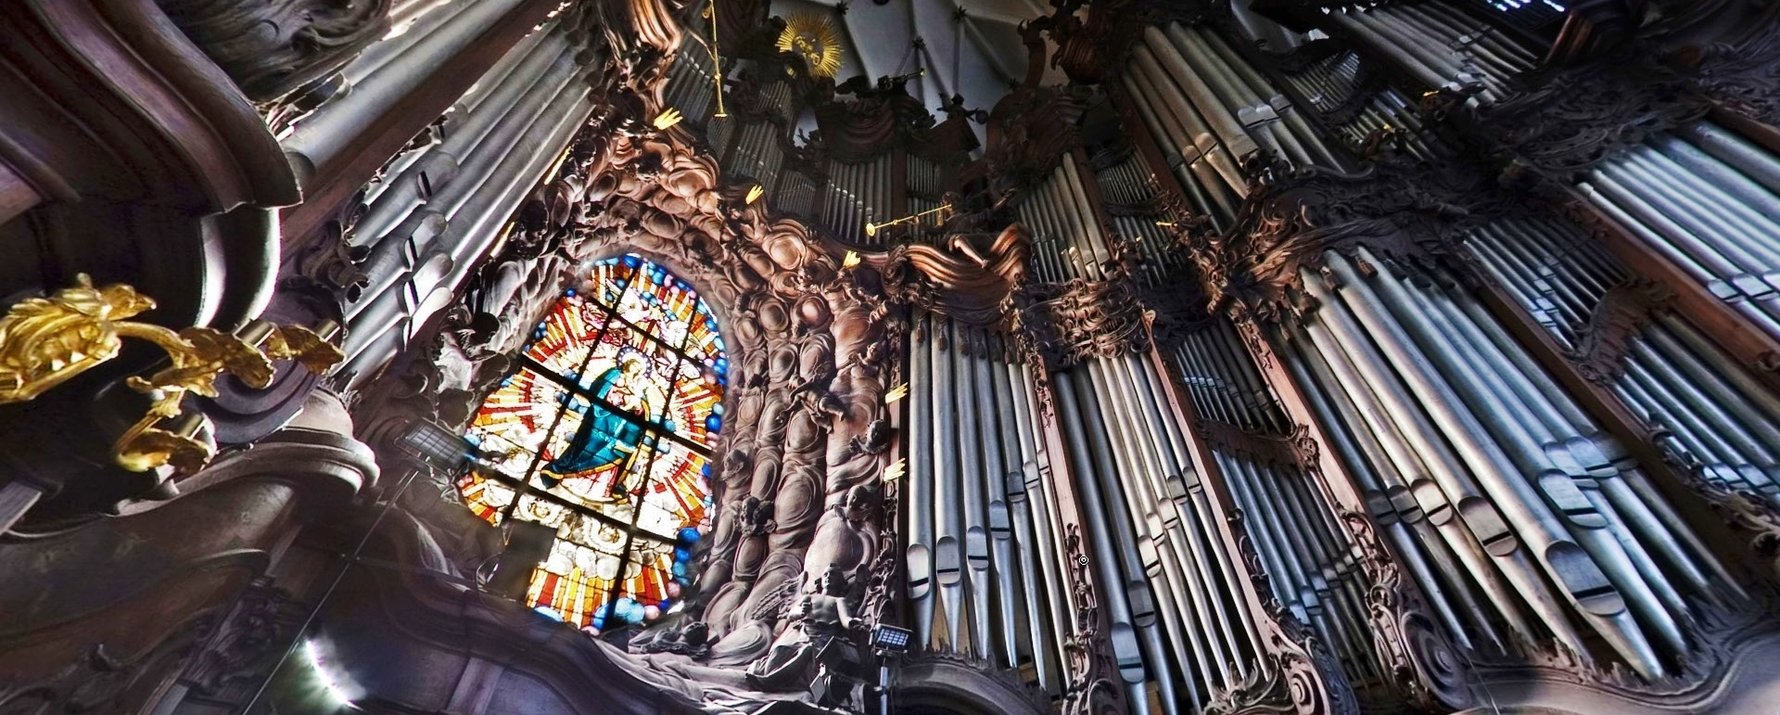 Oliwa Cathedral's Organ